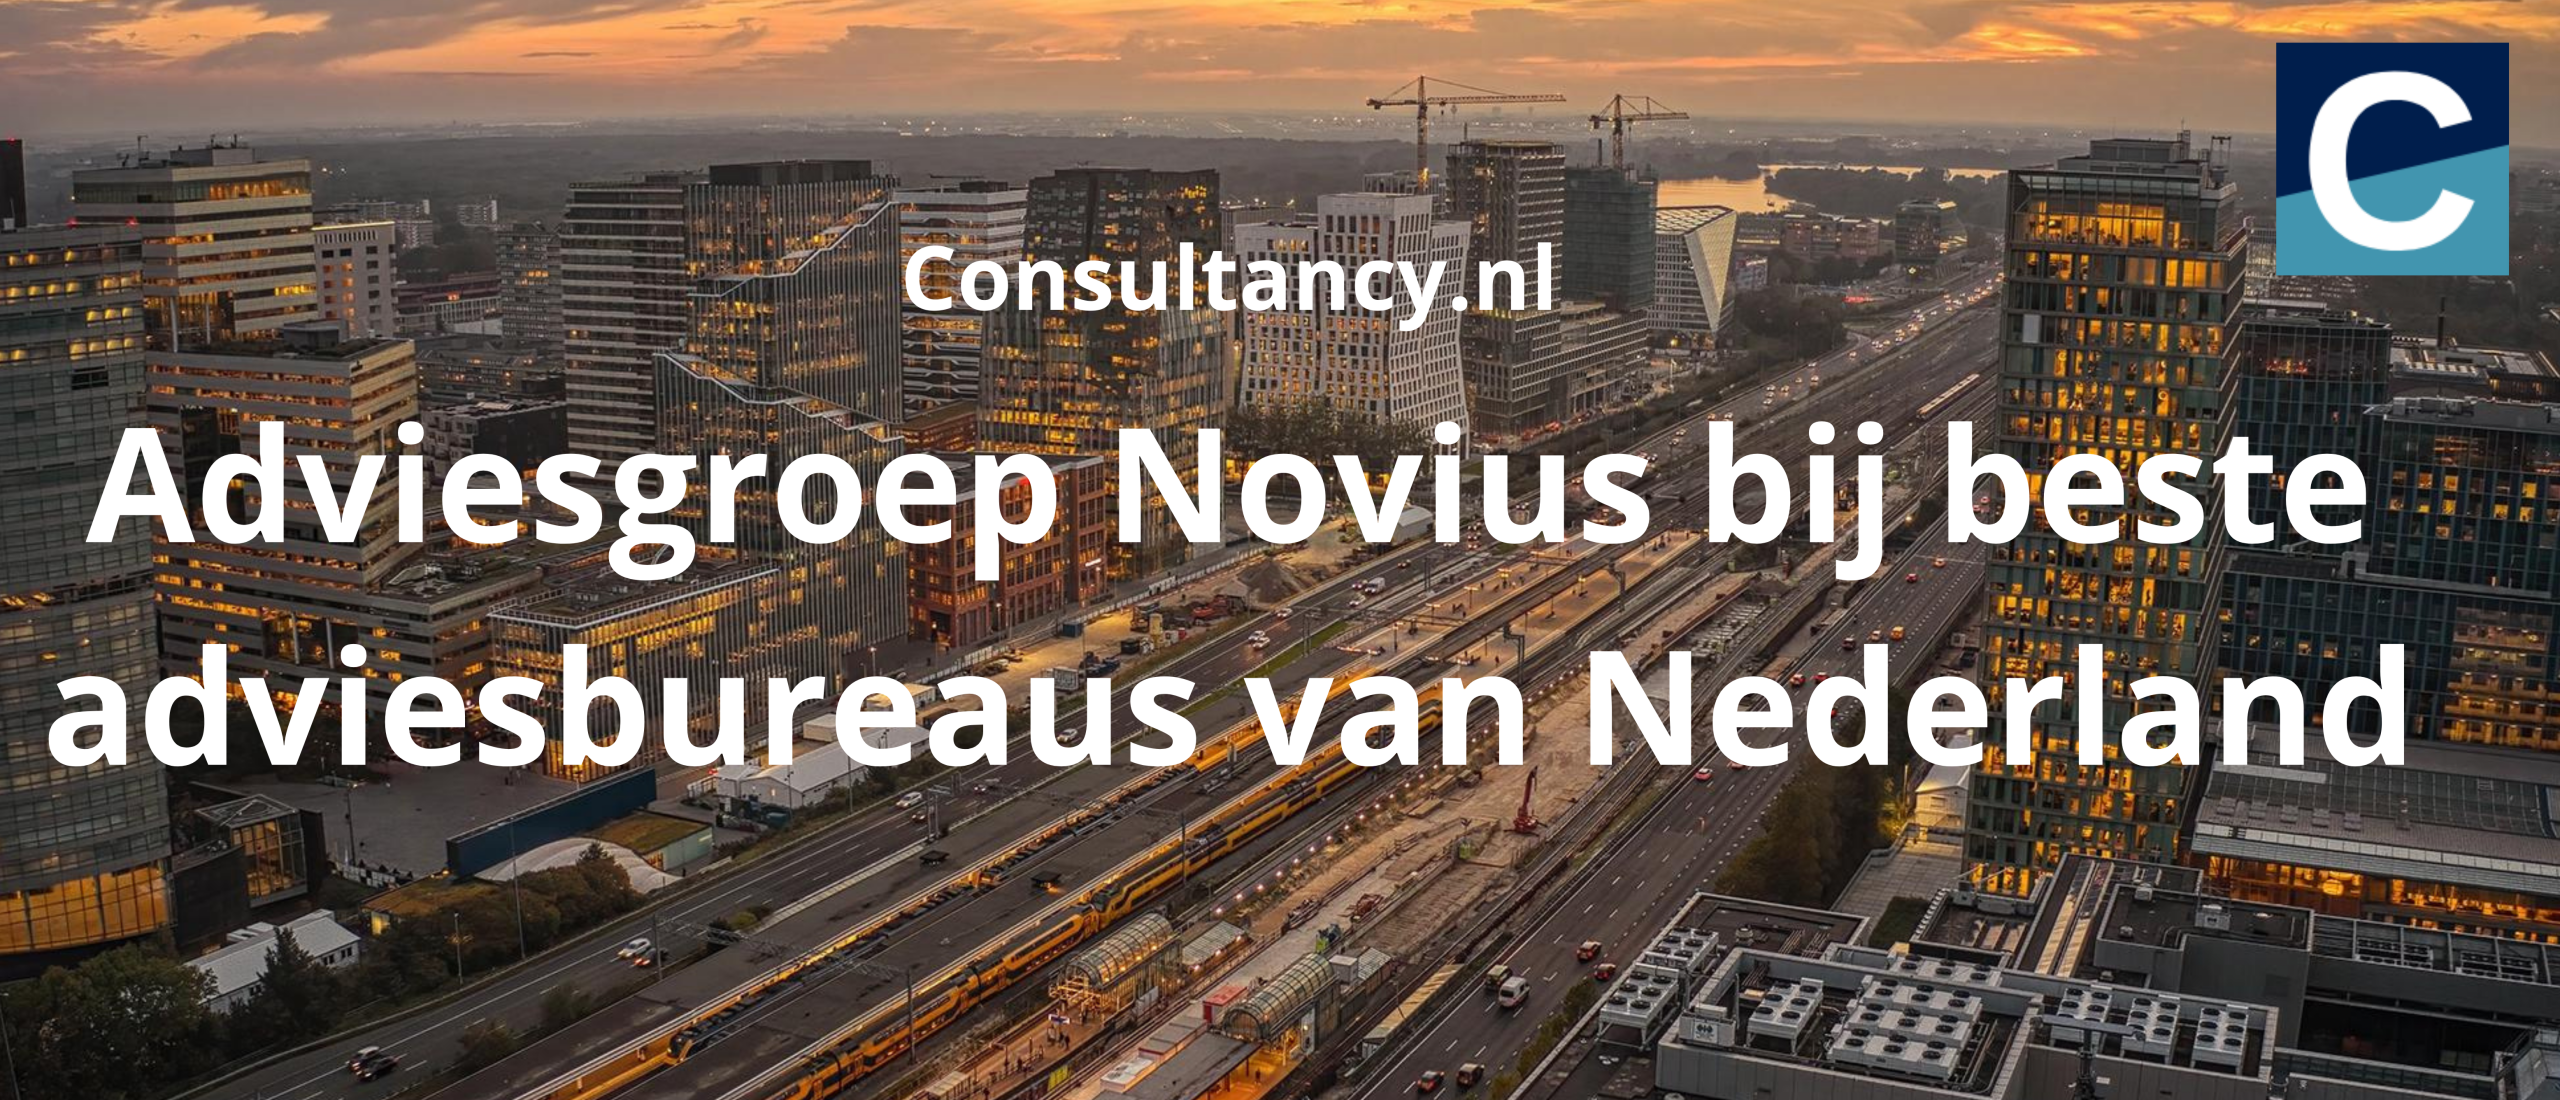 Adviesgroep Novius bij beste adviesbureaus van Nederland